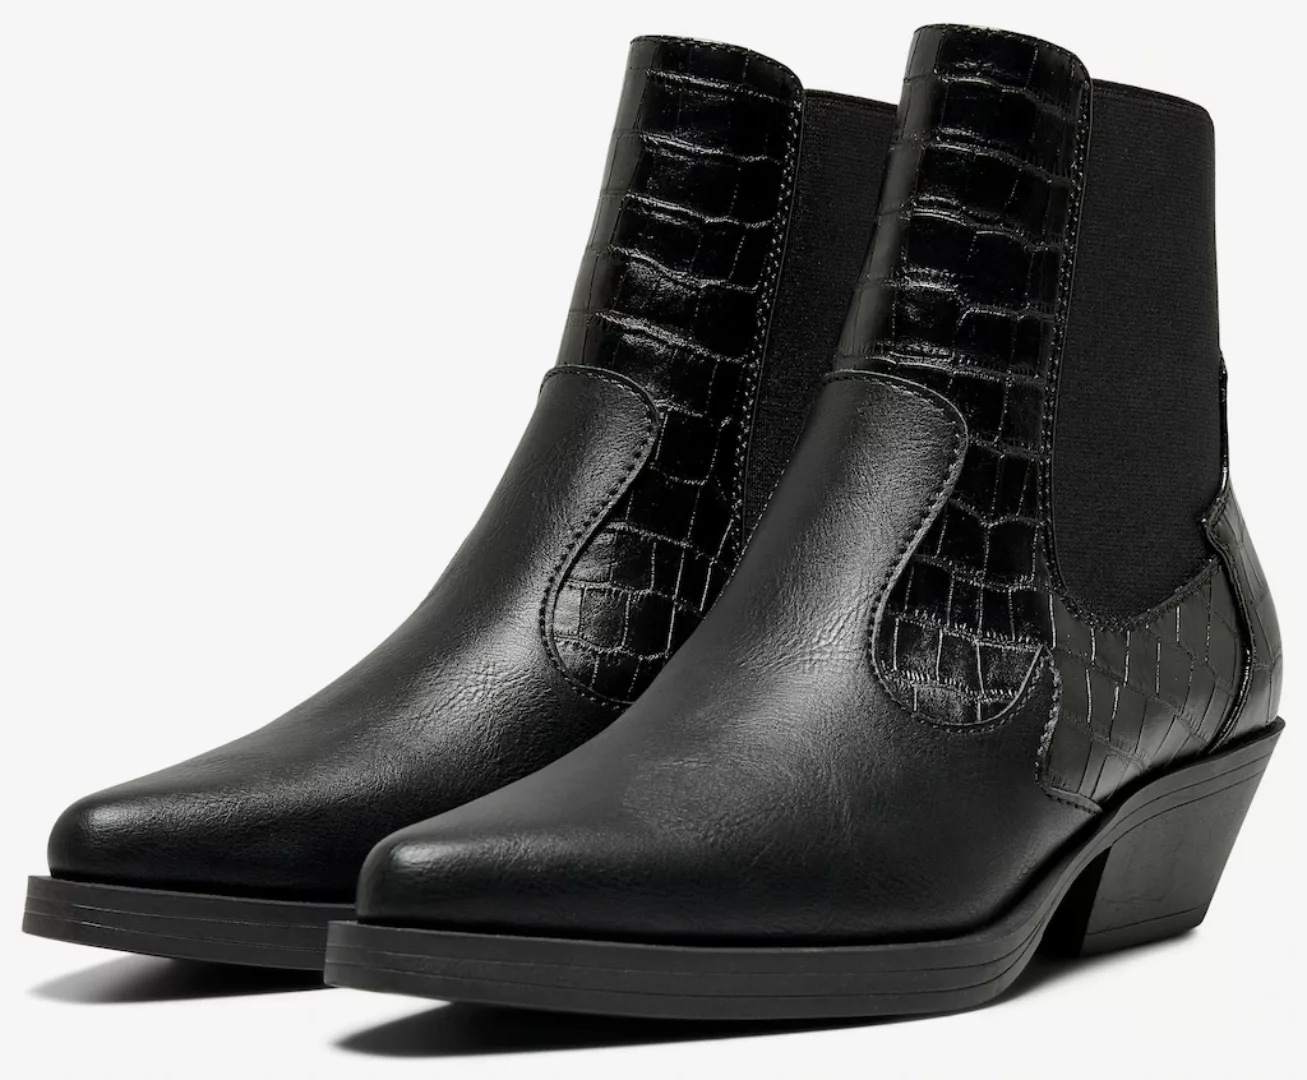 ONLY Shoes Westernstiefelette "ONLBRONCO-2", Cowboy Stiefelette, Boots in s günstig online kaufen